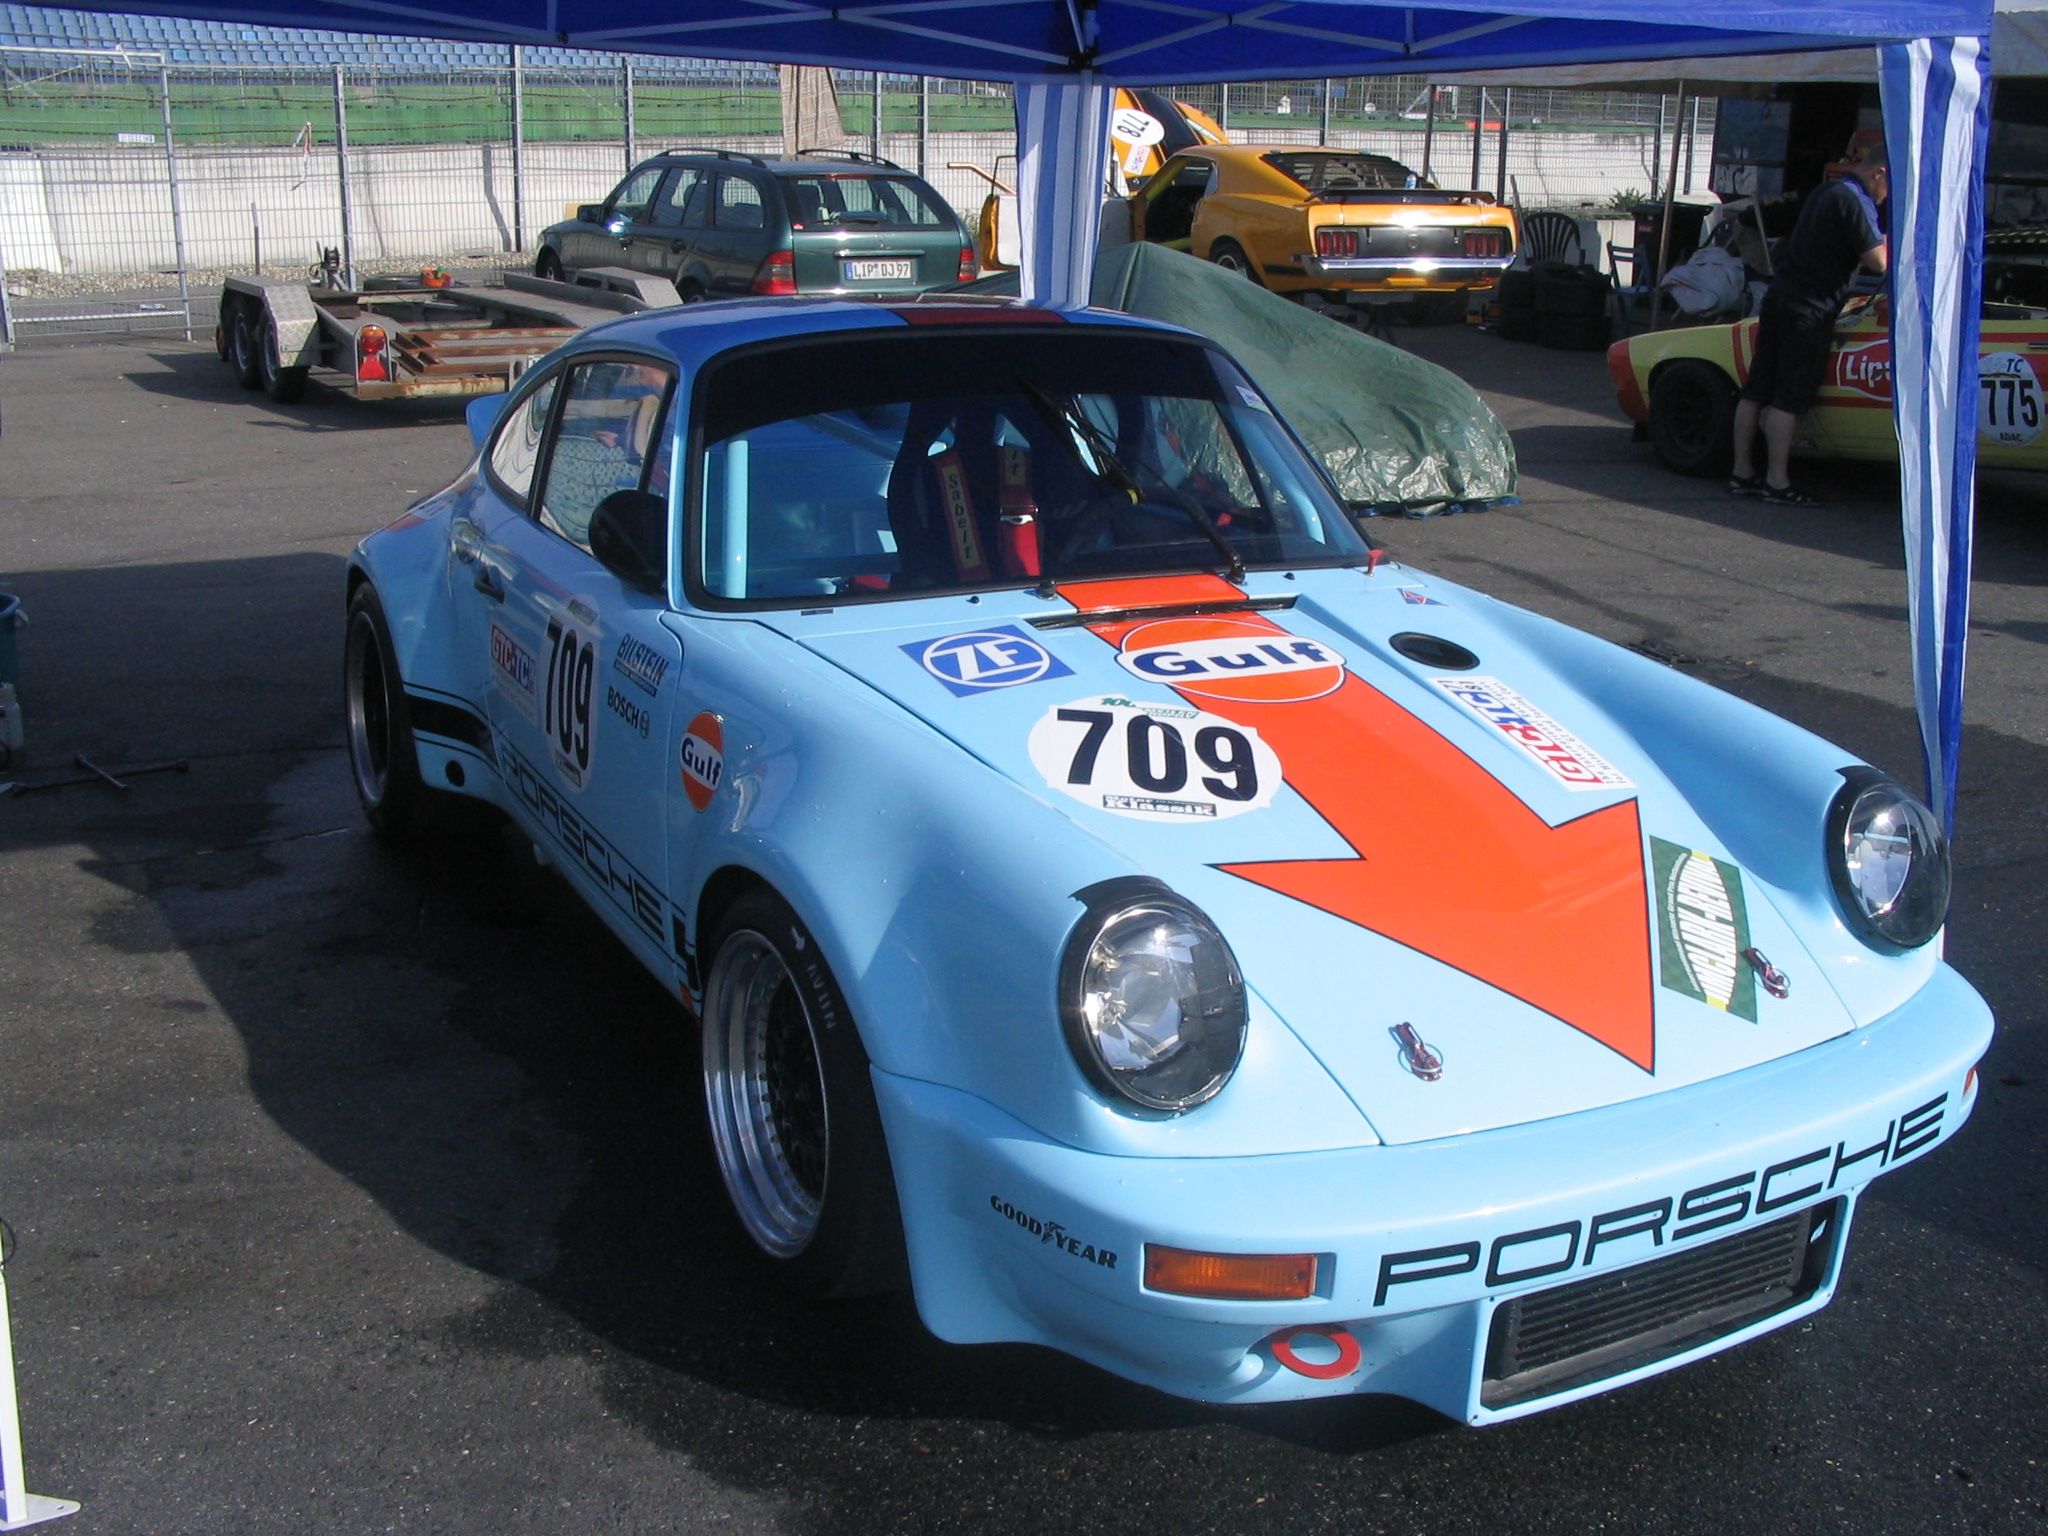 Porsche 911 3.0